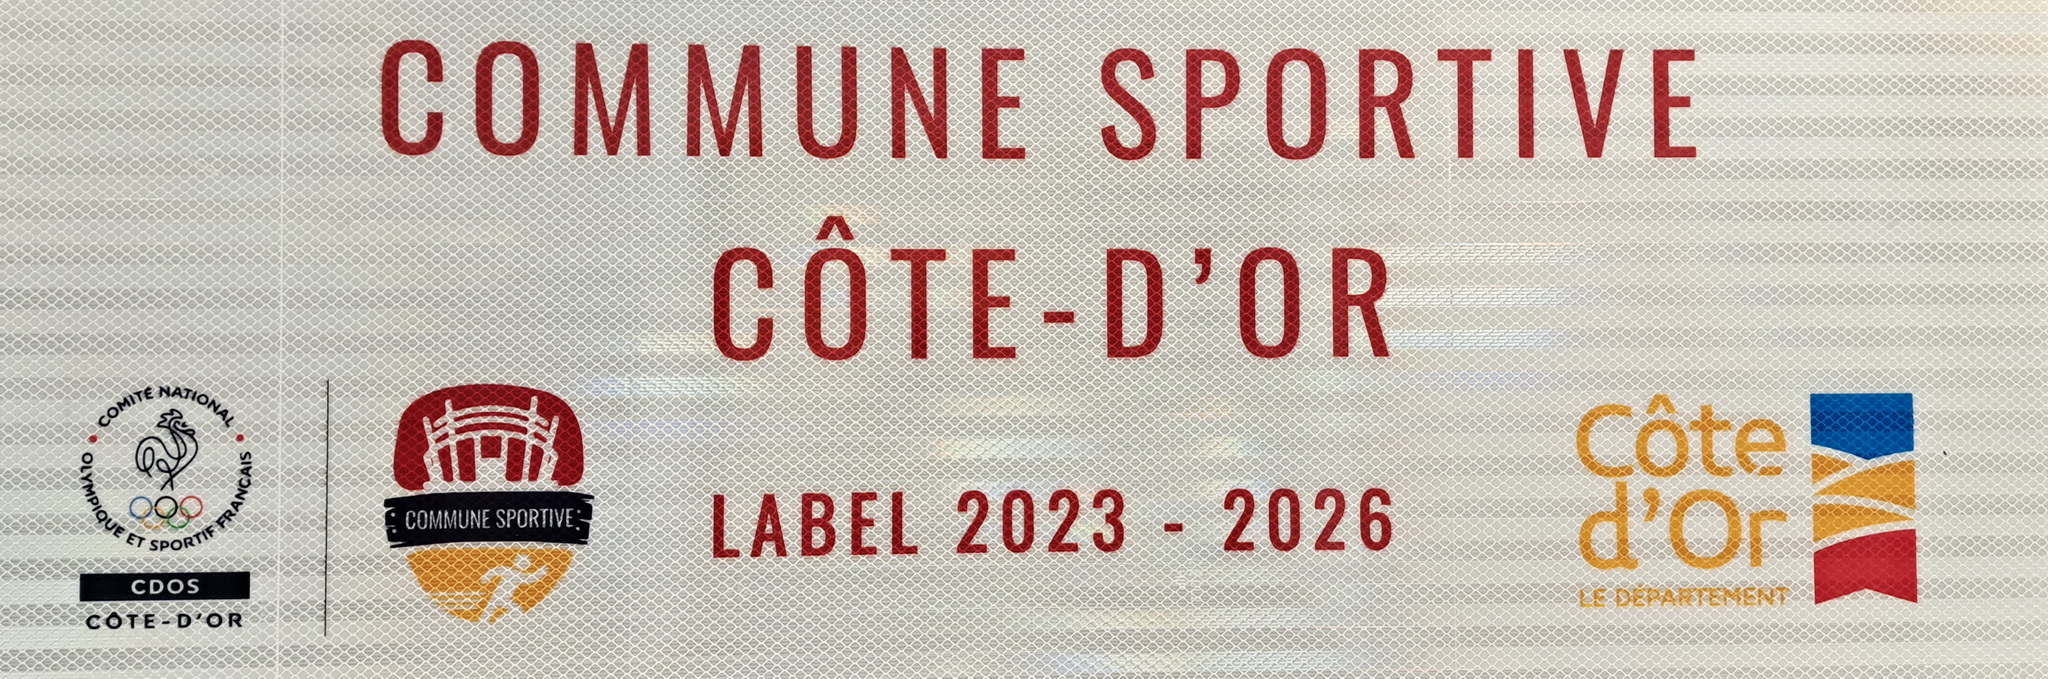 label commune sportive